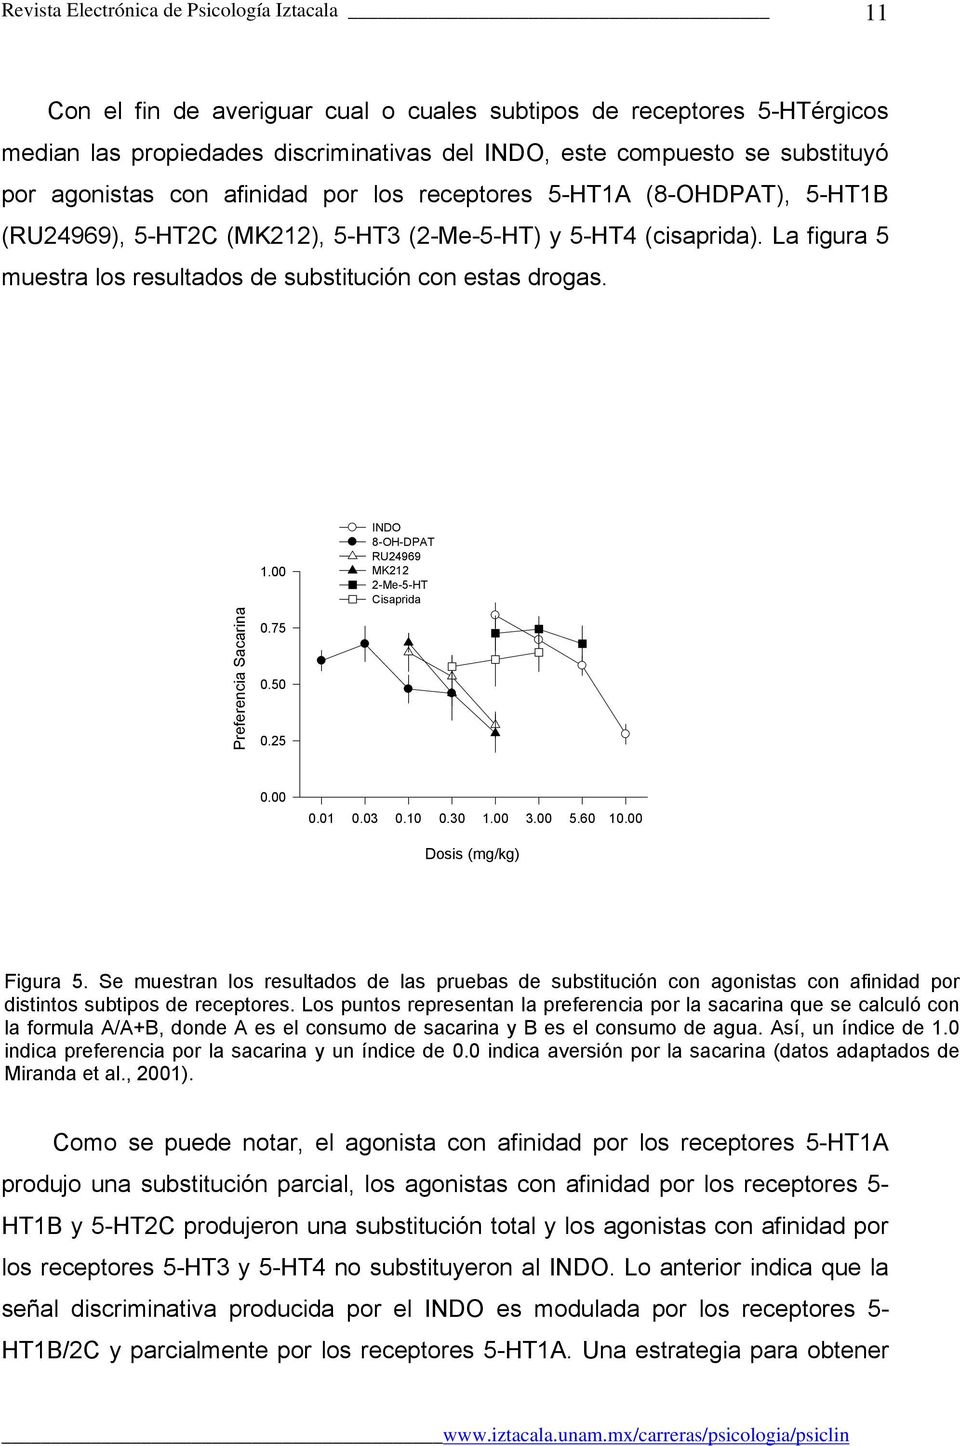 La figura 5 muestra los resultados de substitución con estas drogas. Preferencia Sacarina 1.00 0.75 0.50 0.25 INDO 8-OH-DPAT RU24969 MK212 2-Me-5-HT Cisaprida 0.00 0.01 0.03 0.10 0.30 1.00 3.00 5.